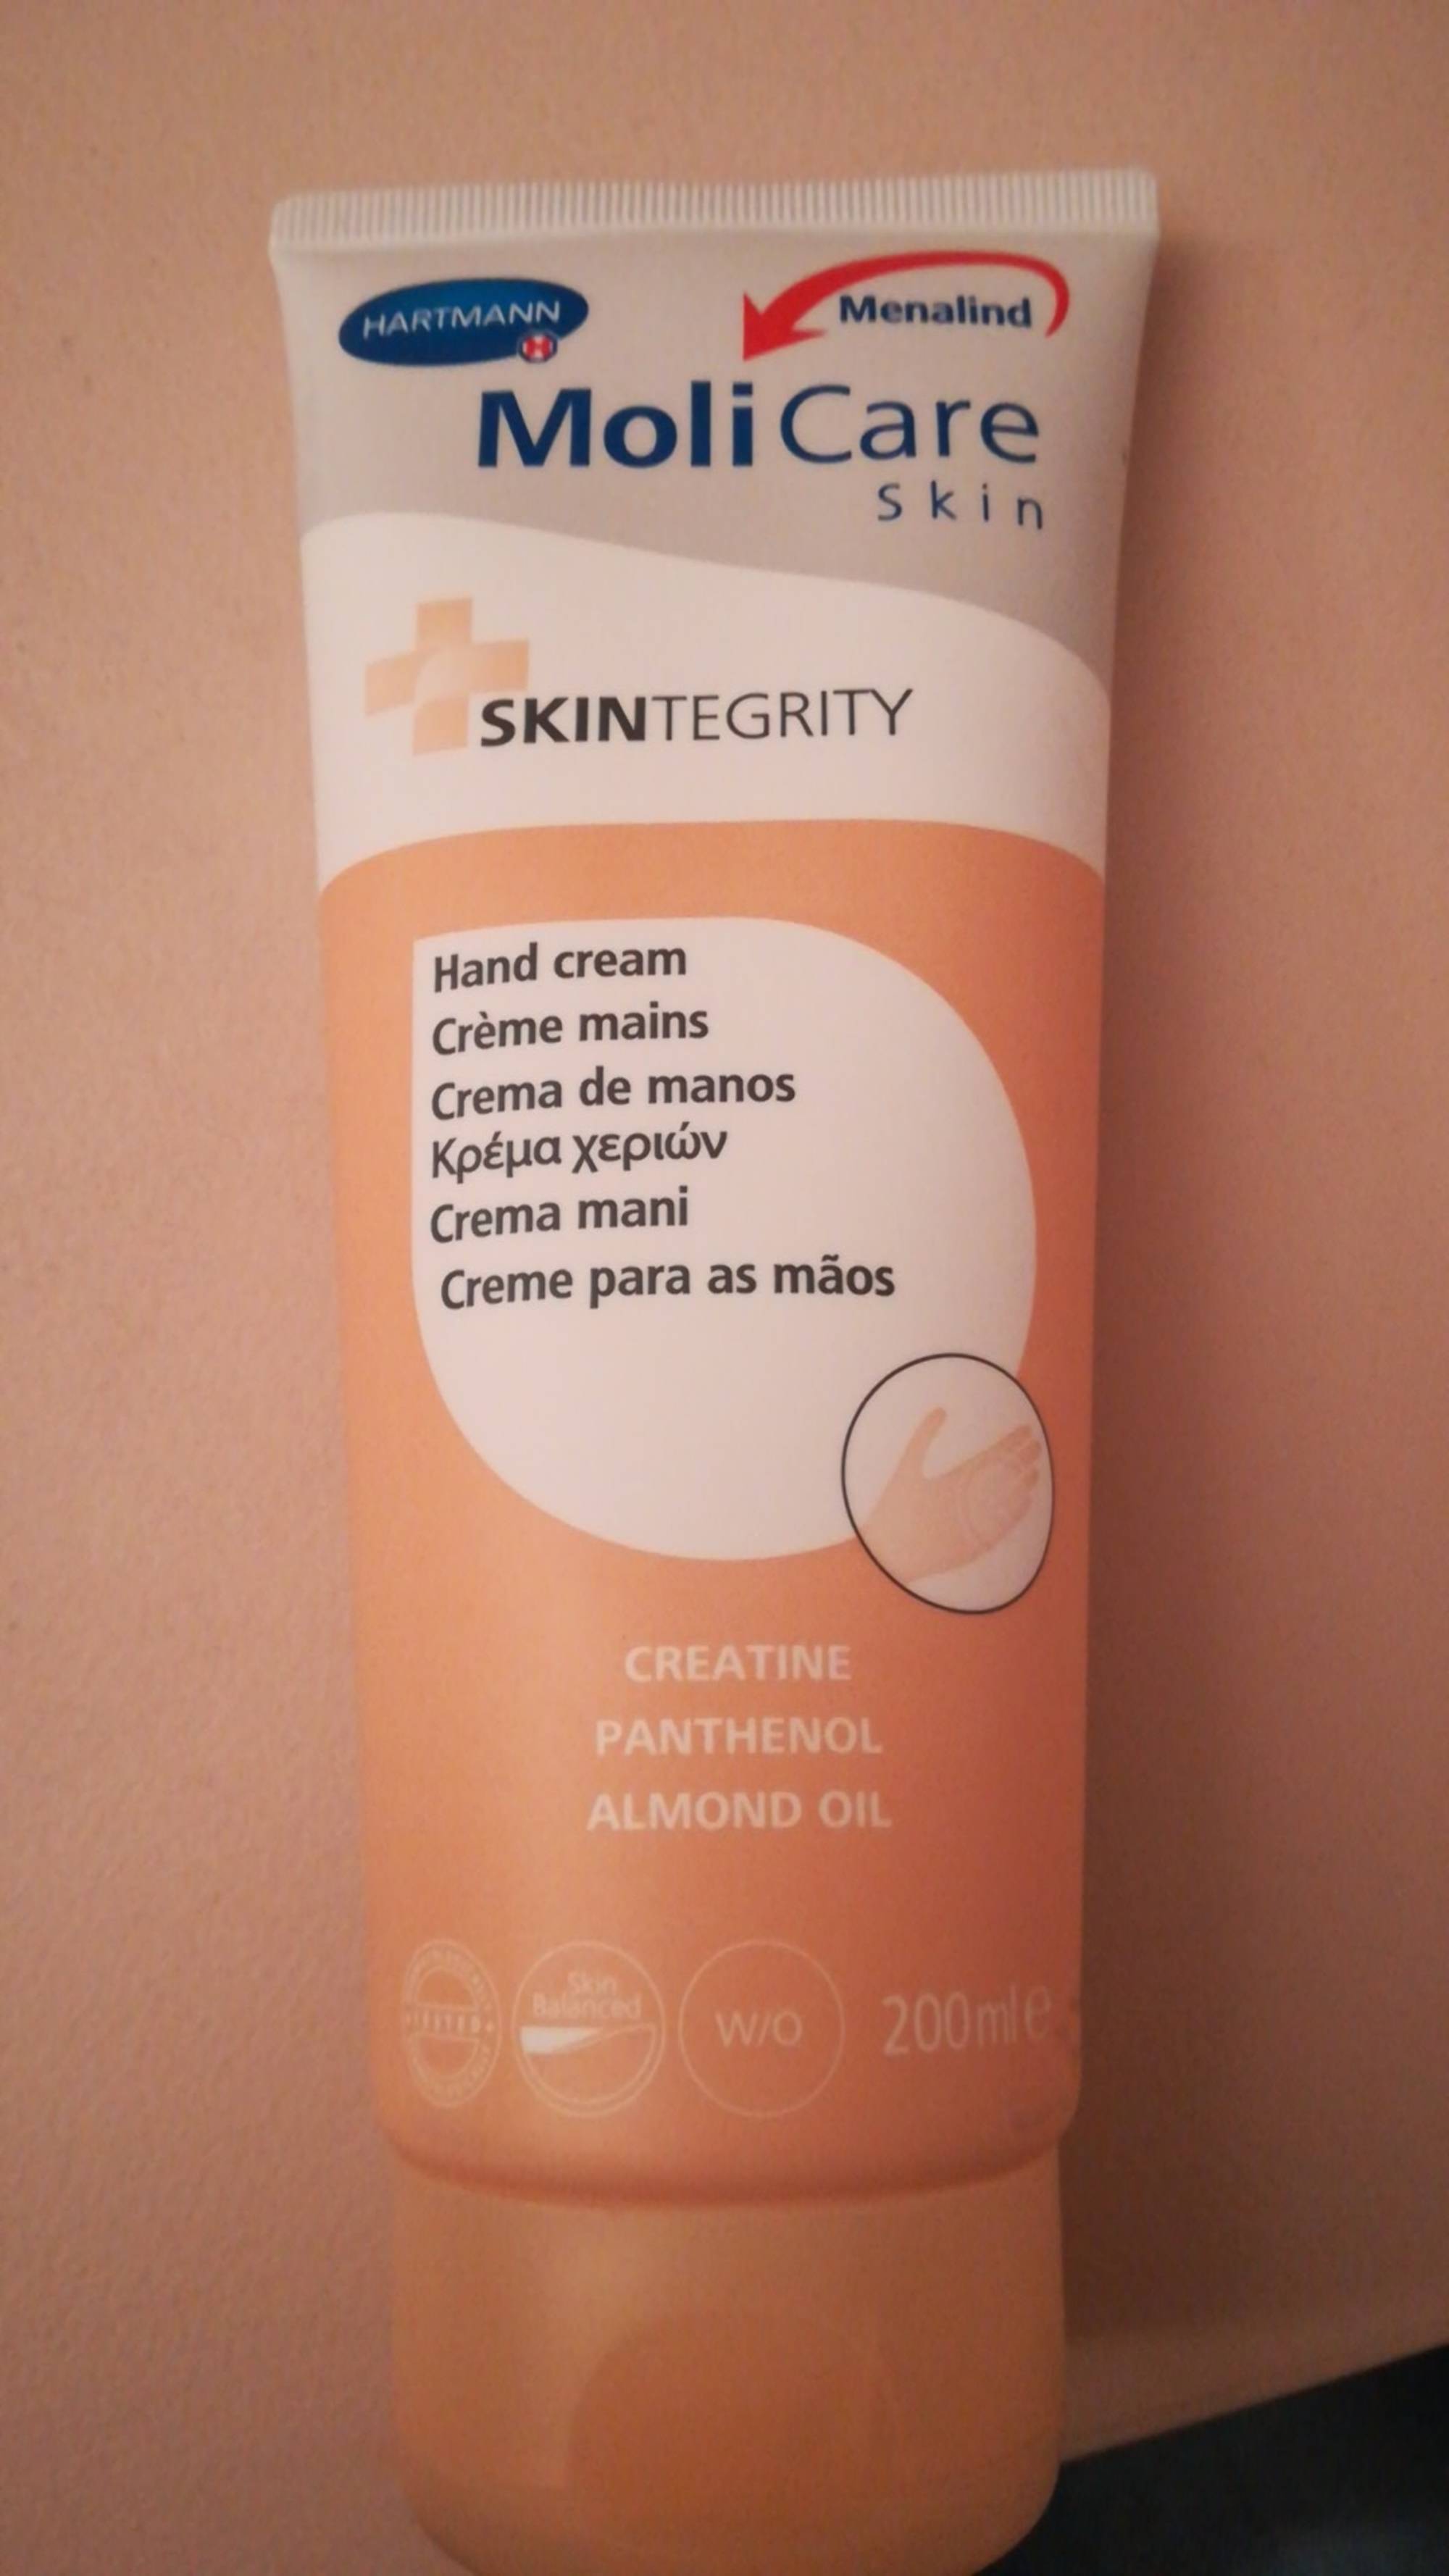 MOLICARE SKIN - Skintegrity - Crème mains